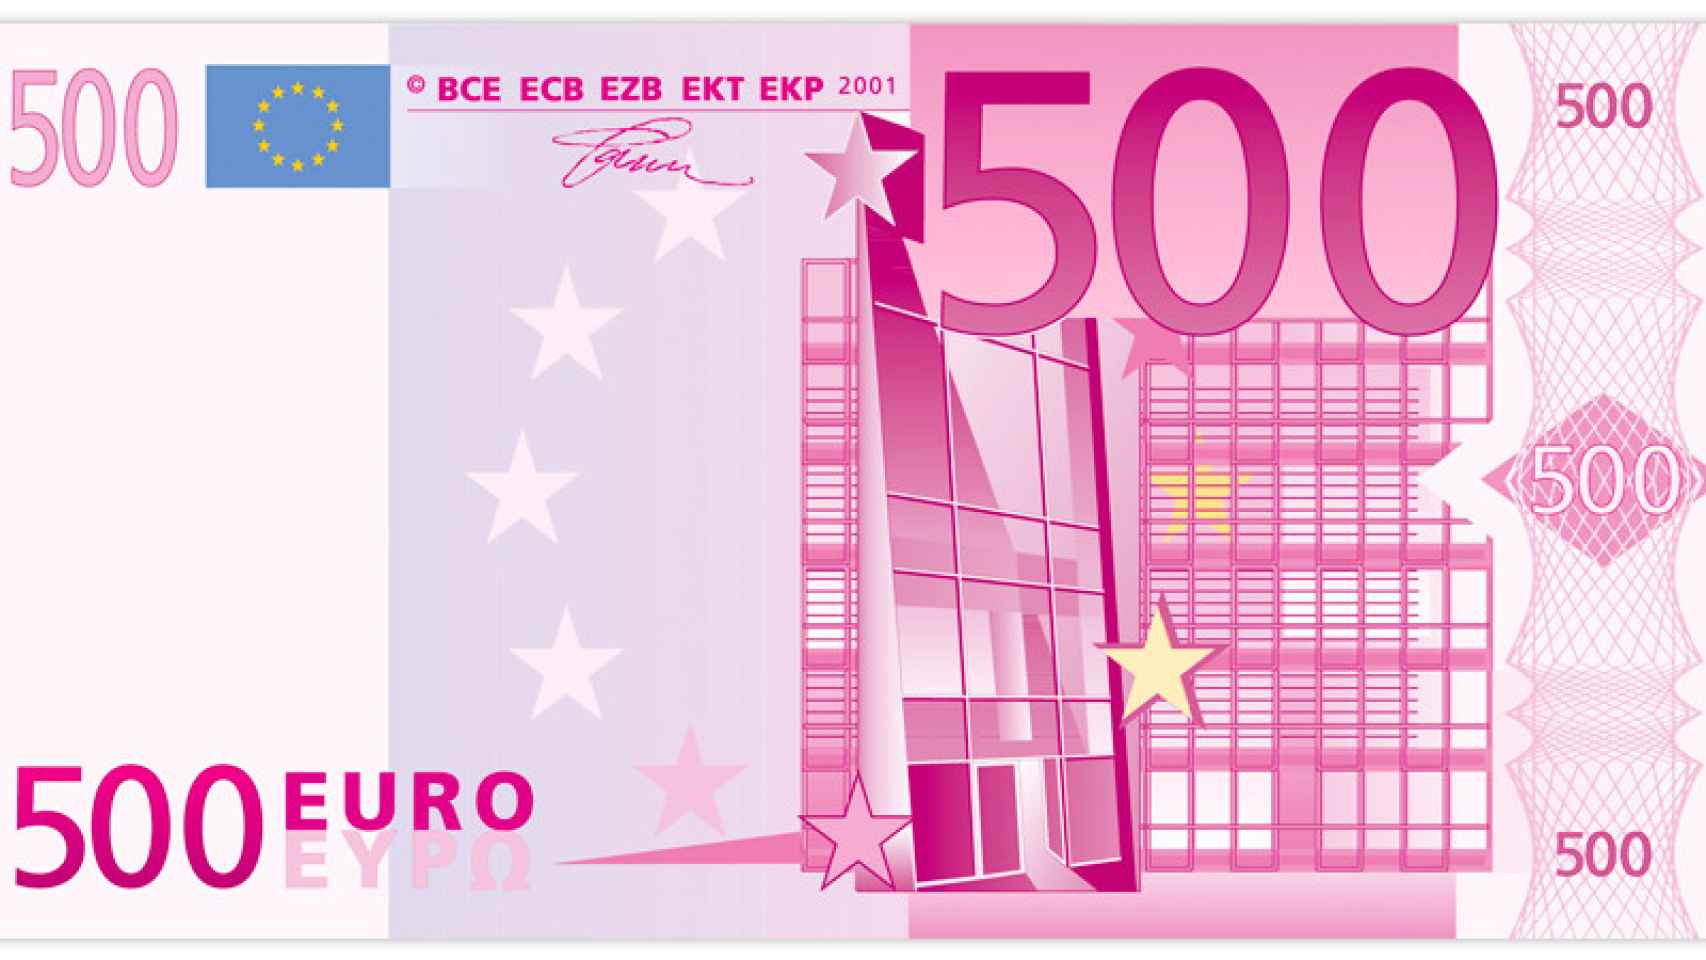 El Banco Central Europeo (BCE) ha confirmado este miércoles el cese definitivo de la impresión del billete de 500 euros.